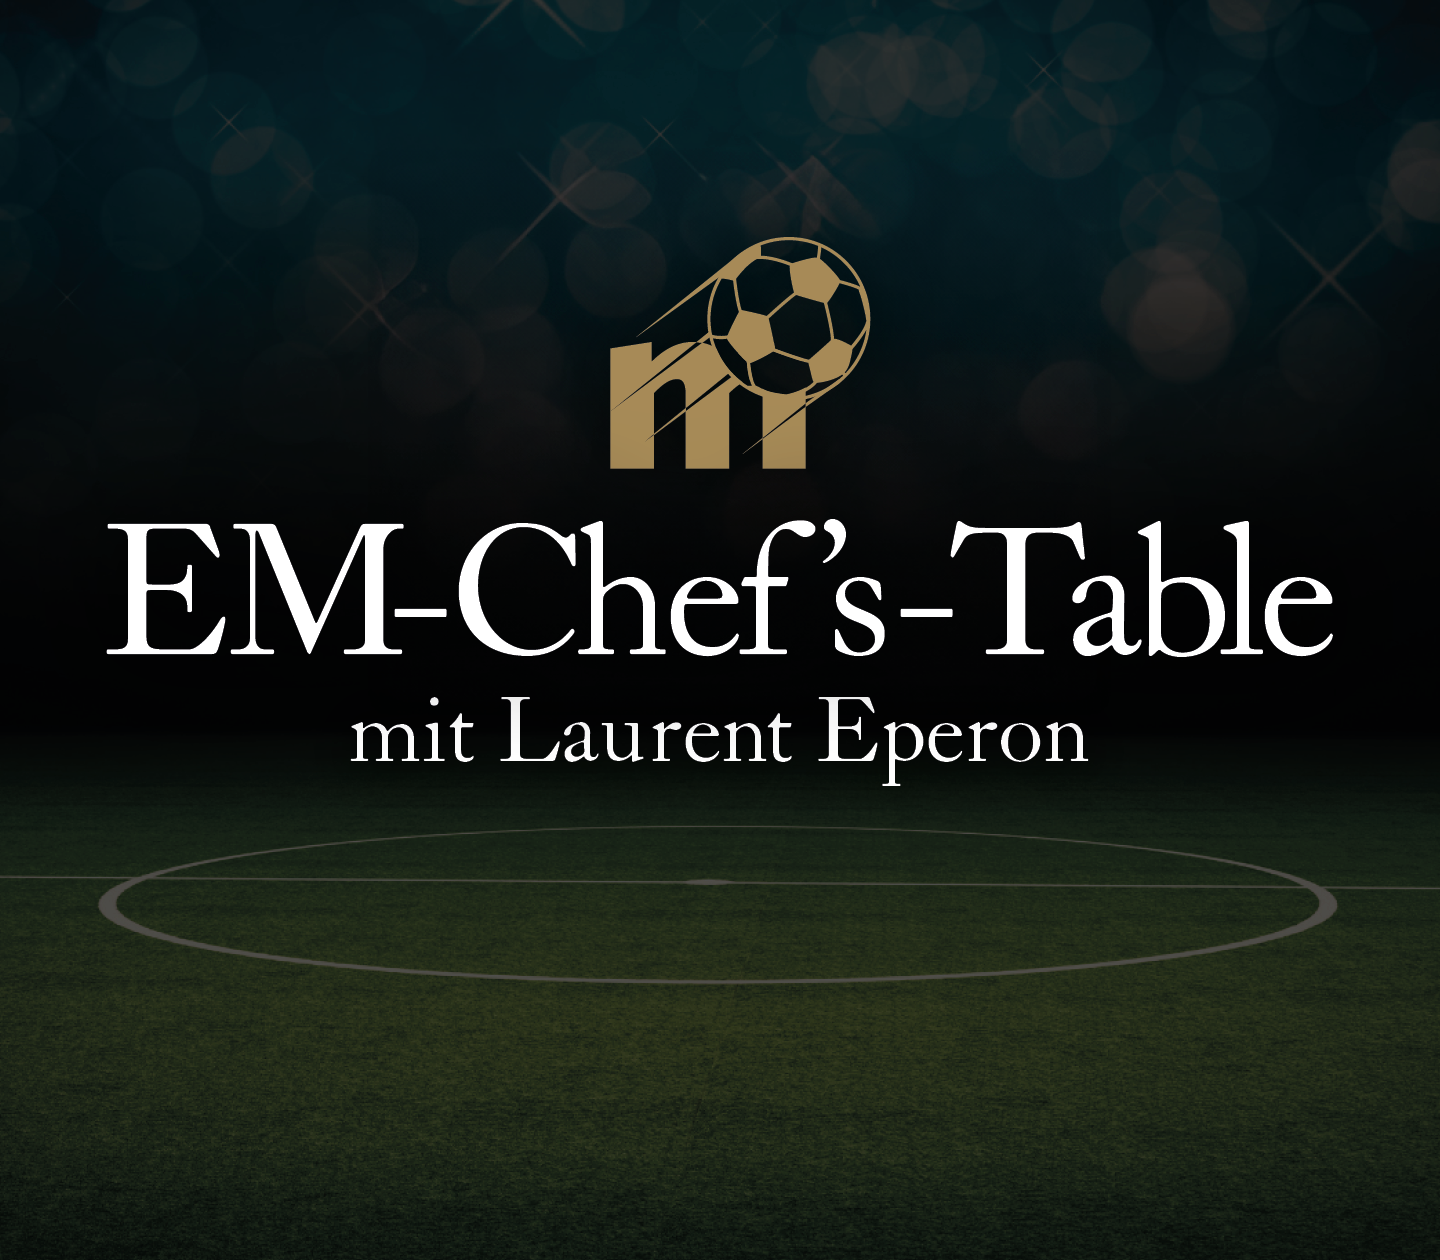 EM-Chef's-Table   NIEDERLANDE vs FRANKREICH